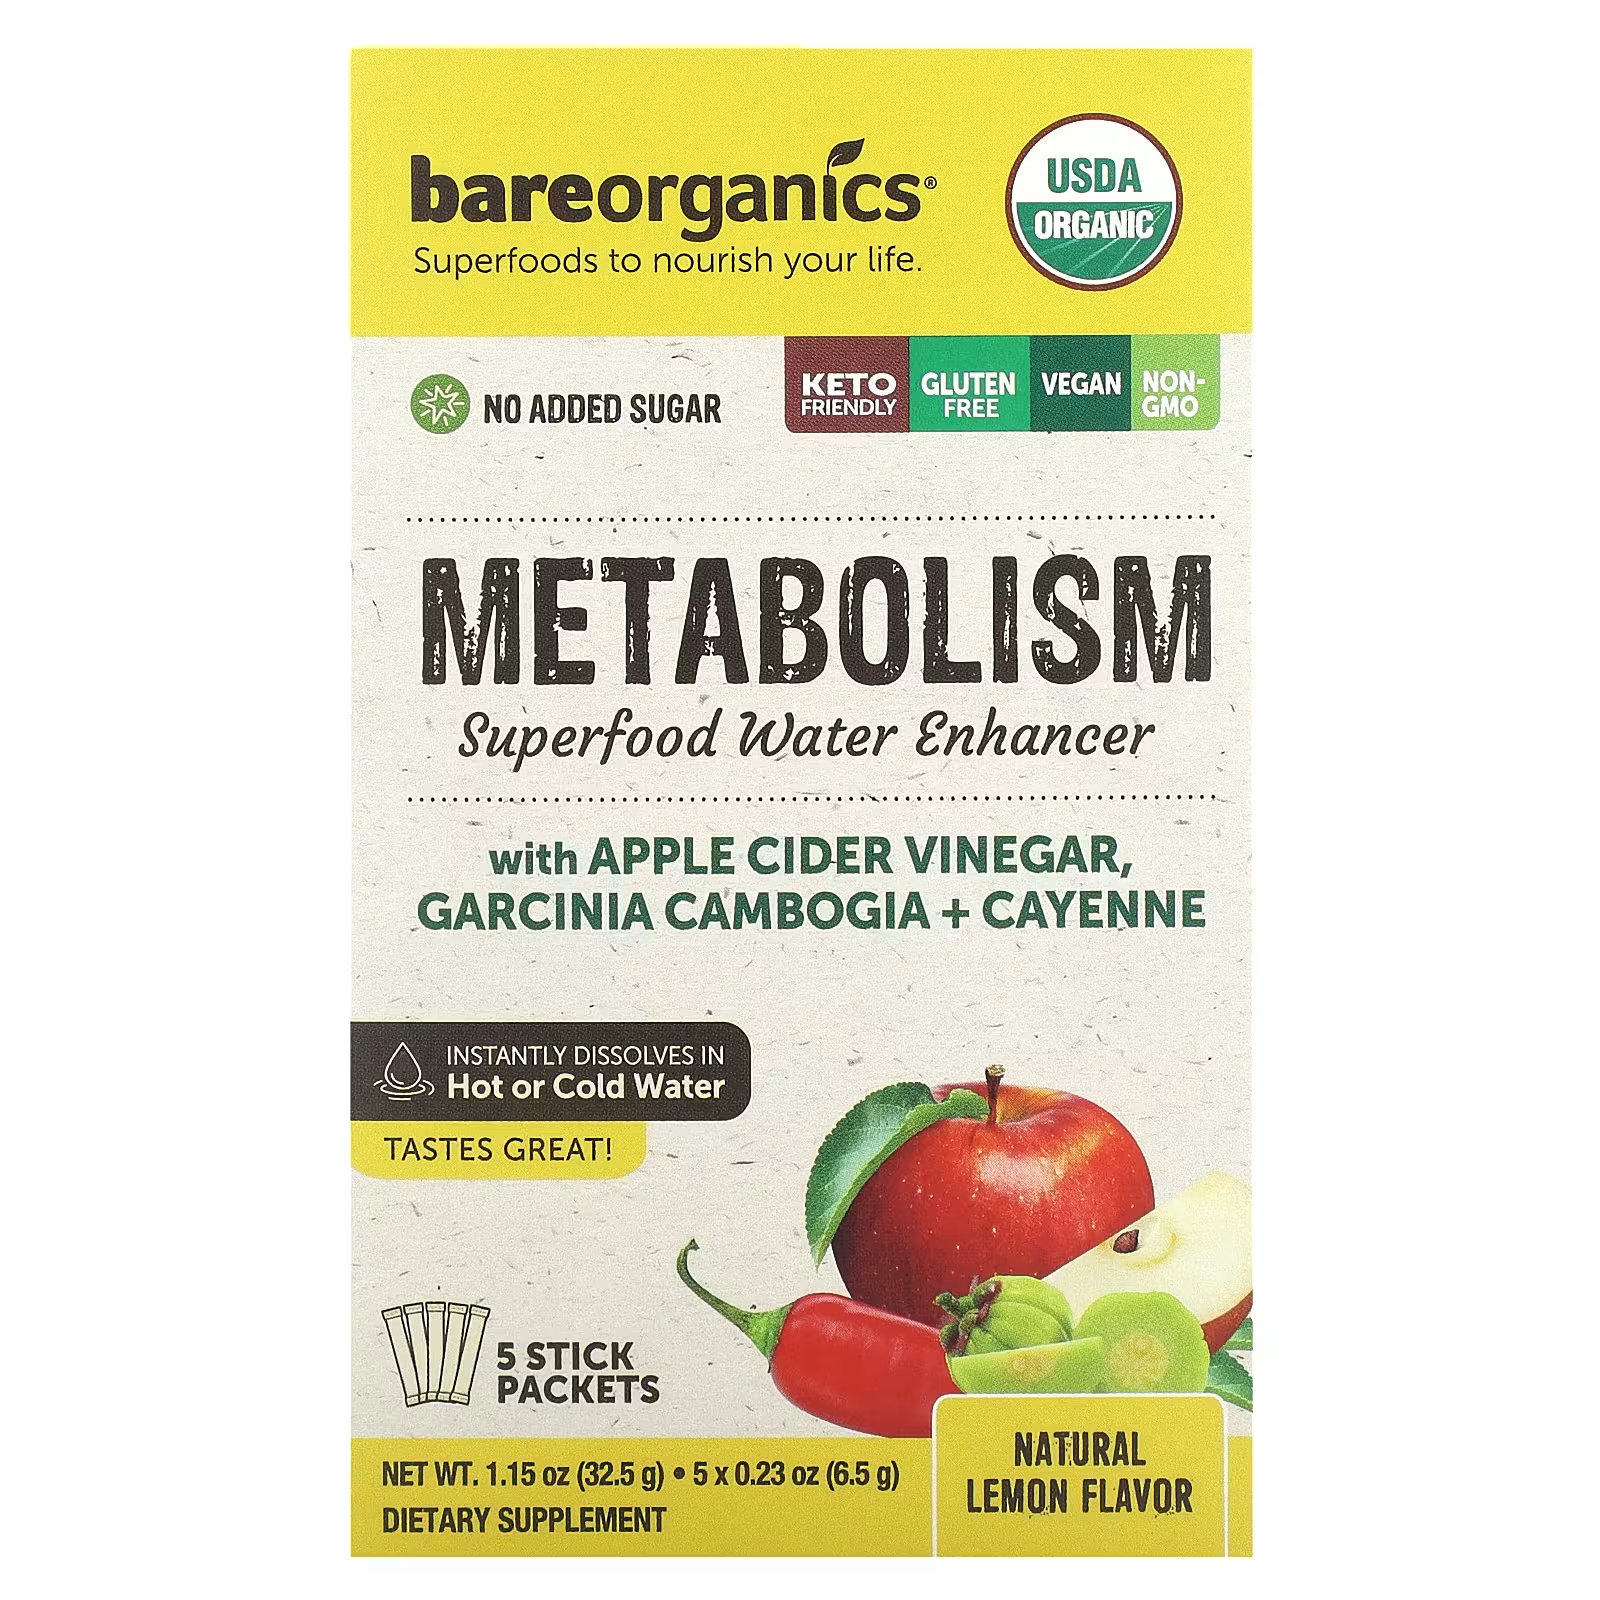 Пищевая добавка BareOrganics Superfood Water Enhancer Natural Lemon, 5 пакетиков по 6,5 г country farms яблочный уксус имбирь кайенский перец и клен 90 капсул